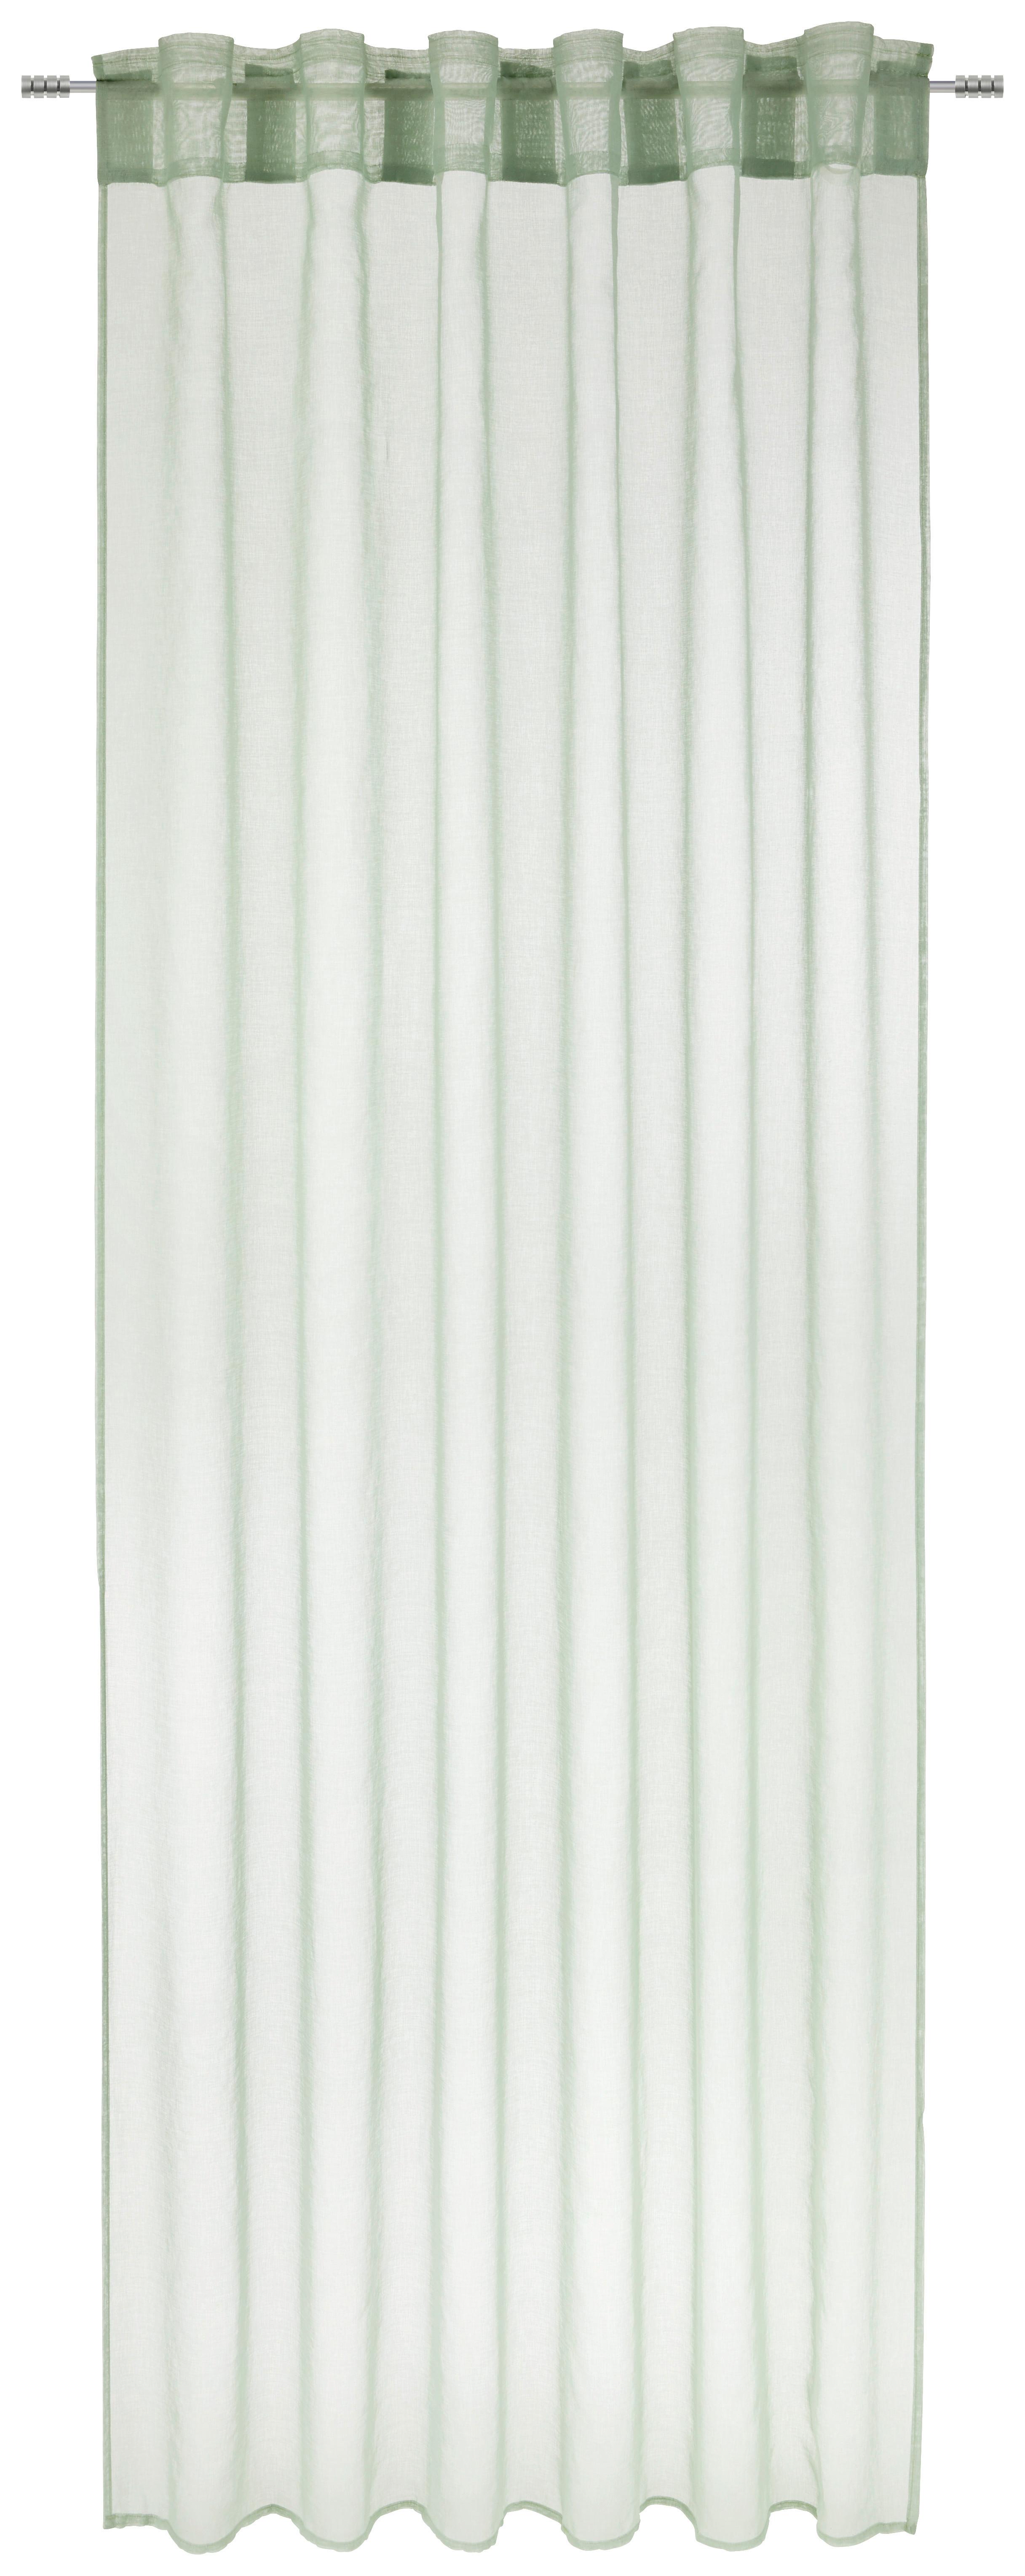 Závěs Tosca, 2x140/245cm, Sv.zelená - světle zelená, textil (140/245cm) - Modern Living